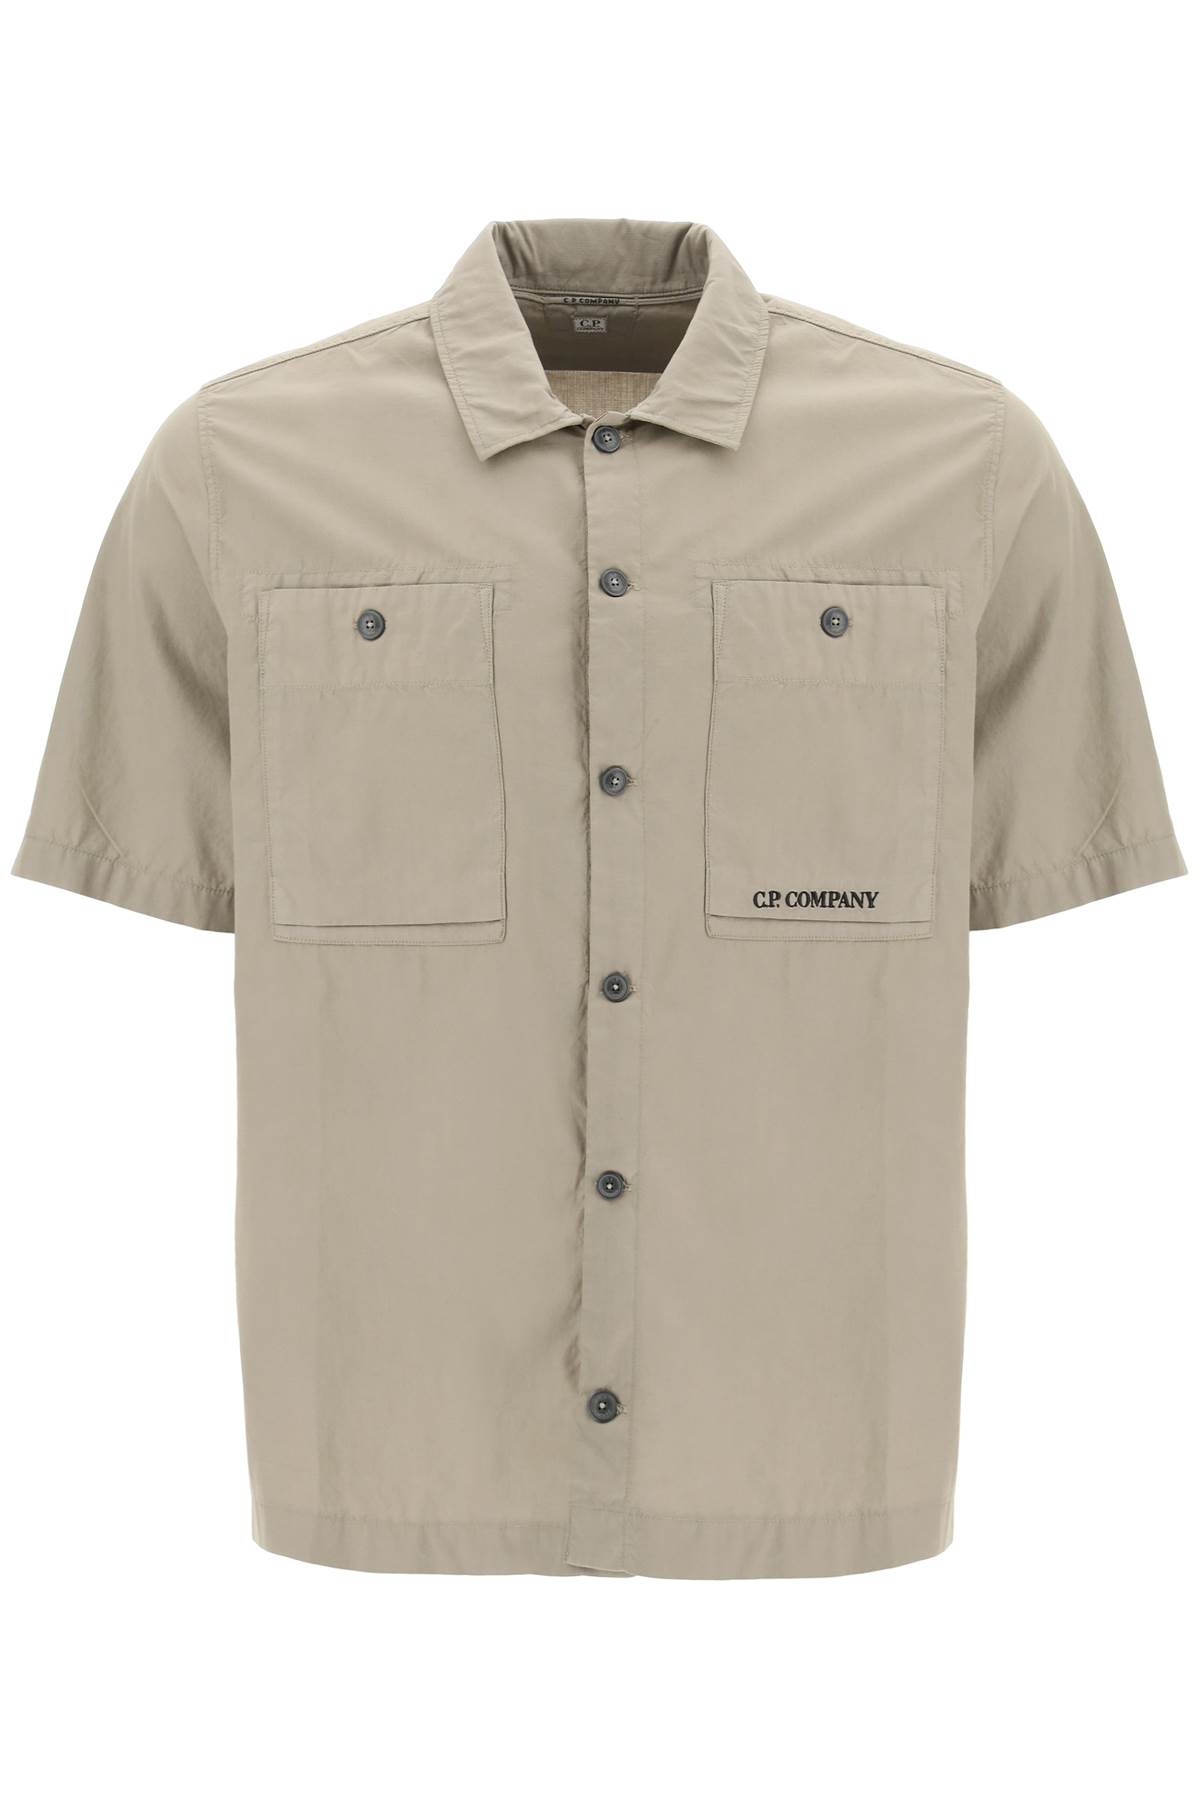 C.P. Company Ripstop Cotton Shirt